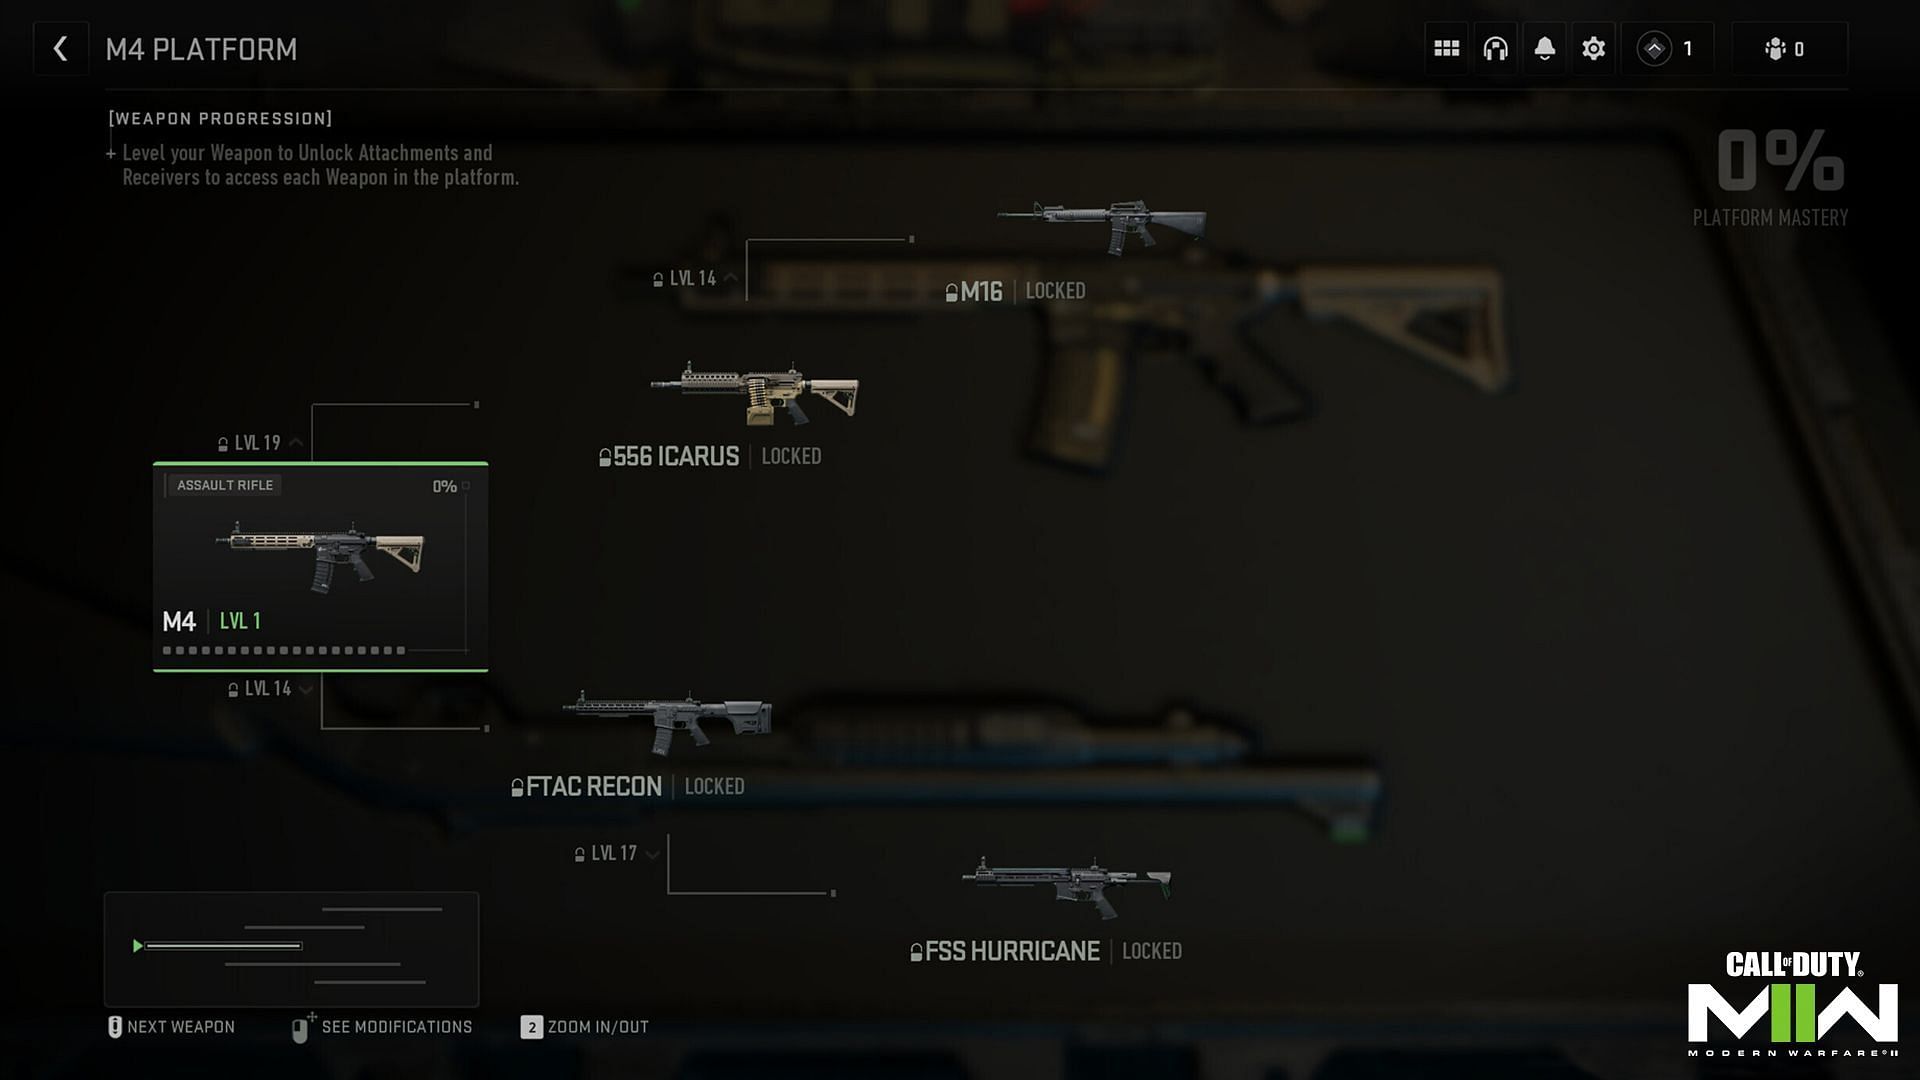 The M4 Weapon Platform (Image via Activision)